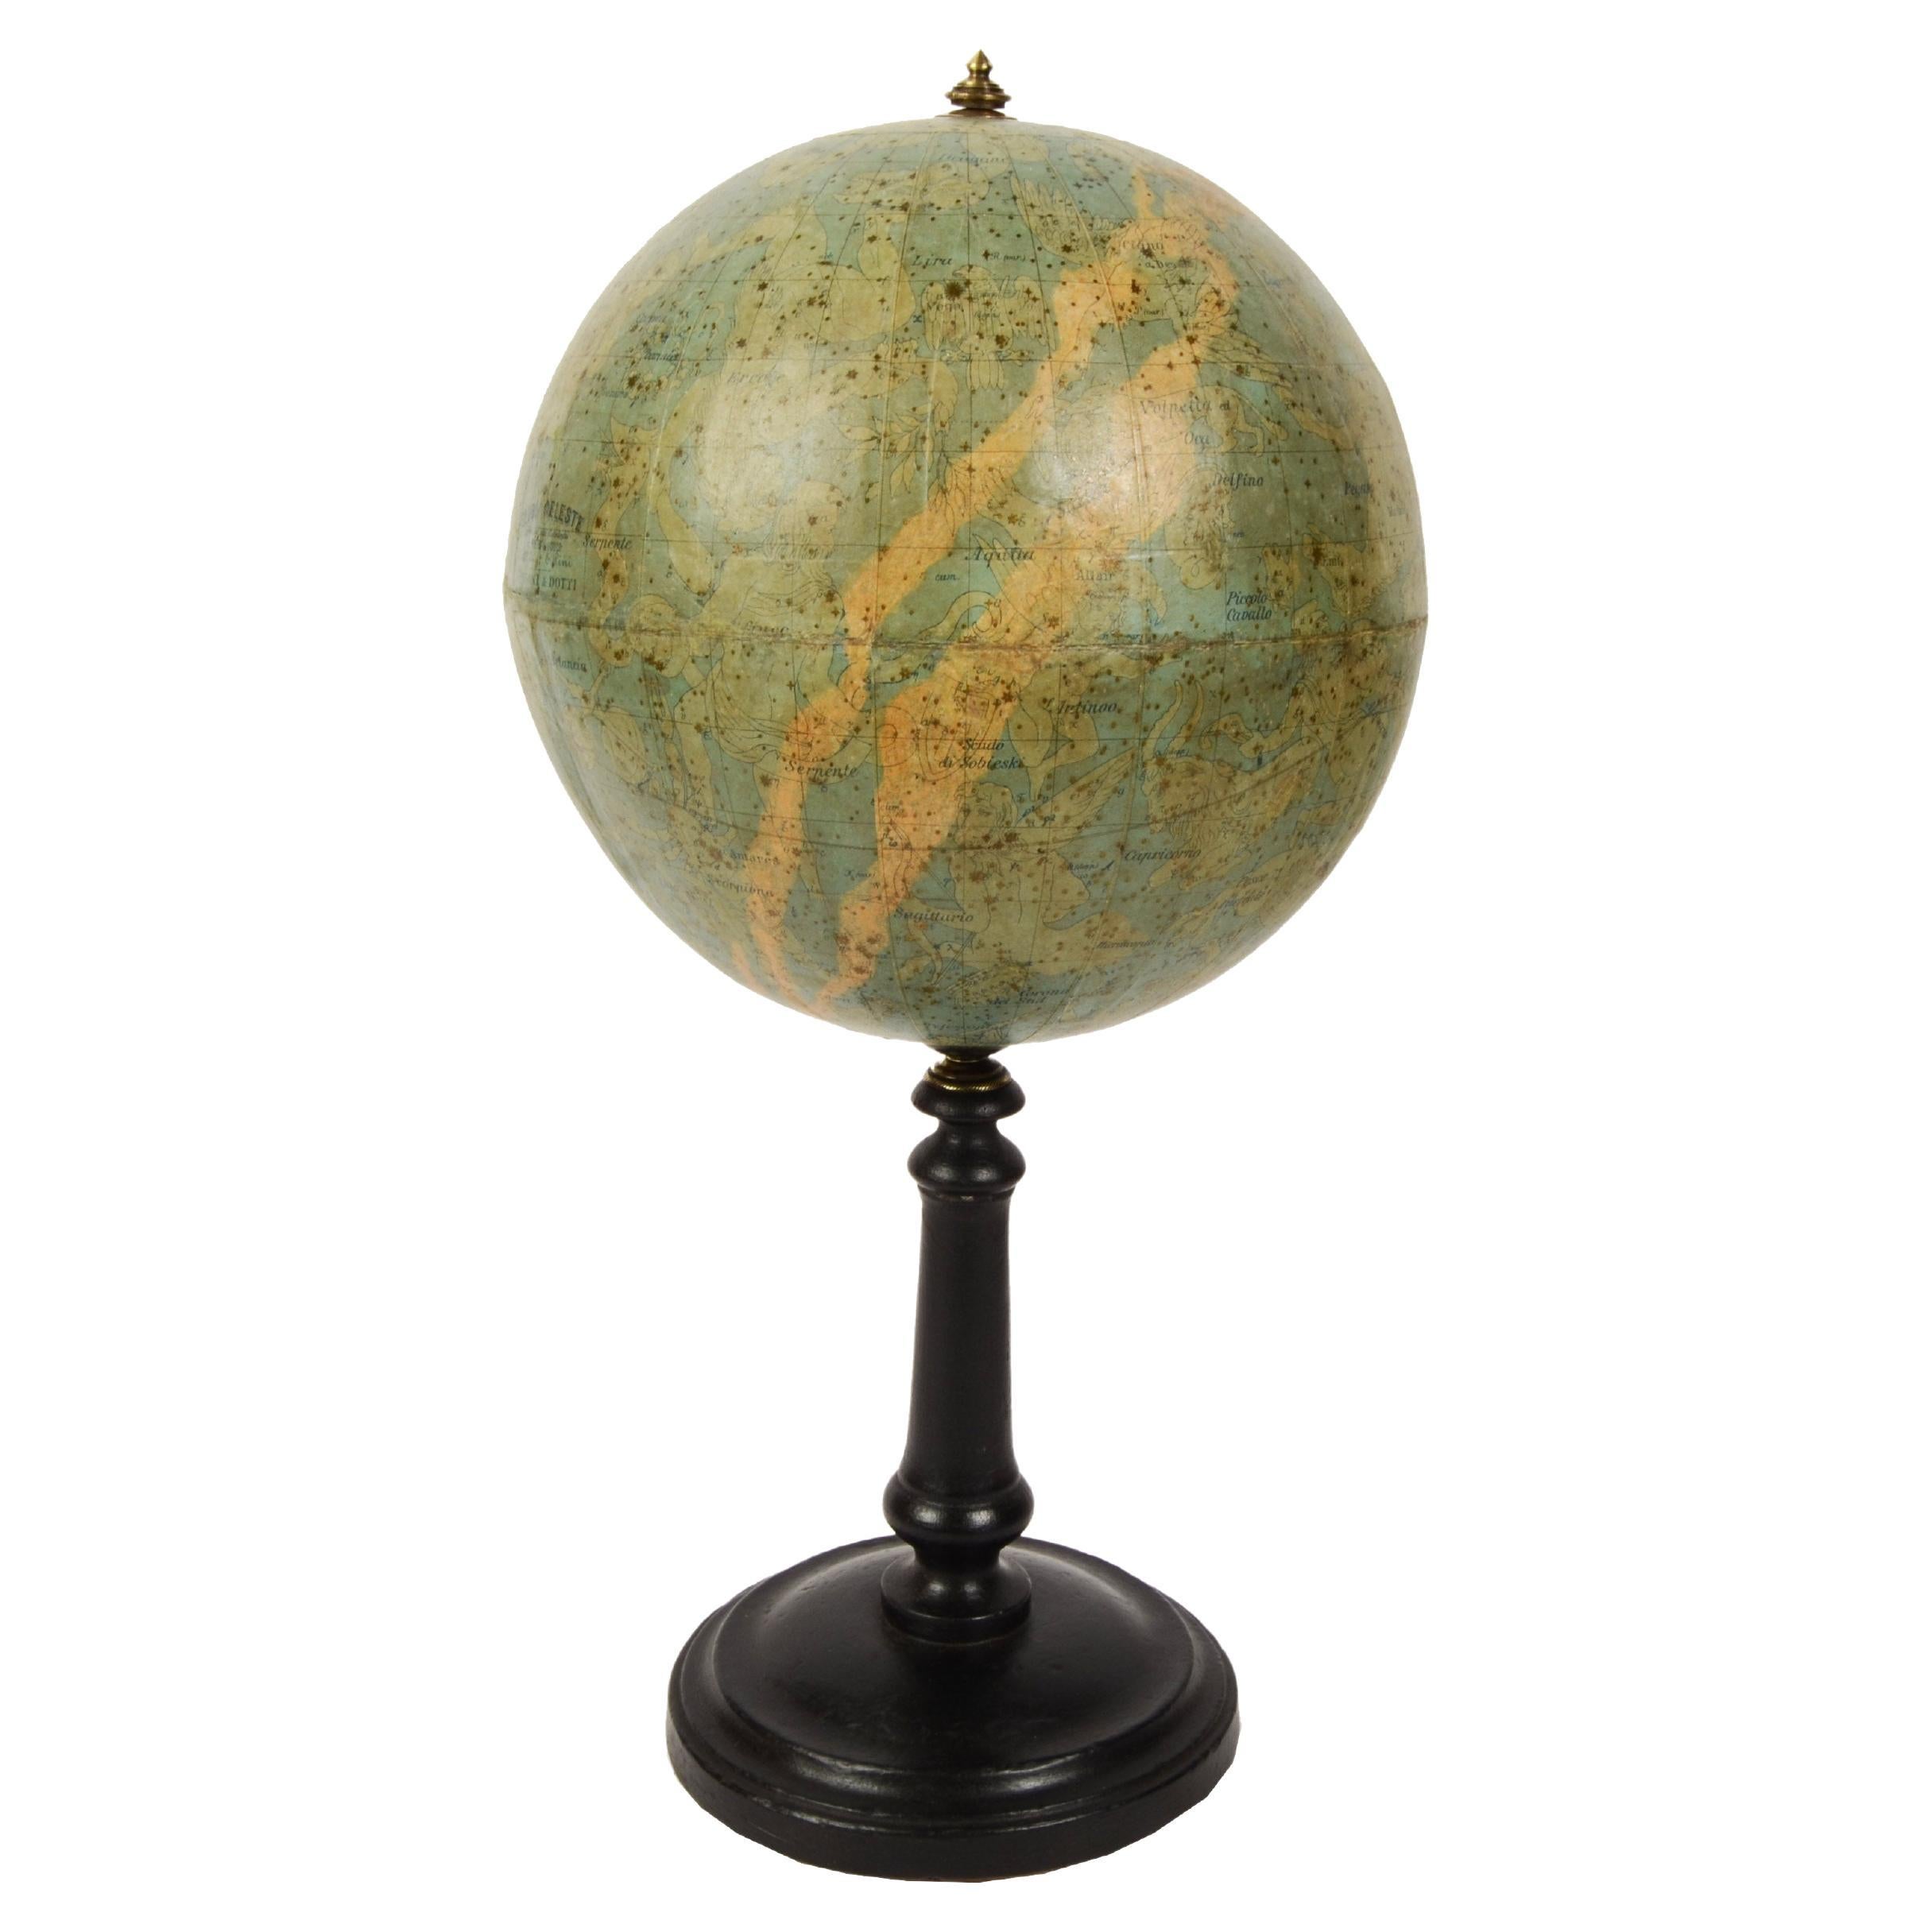 Sphère Celestial Globe antique en papier maché signée Gussoni e Dotti Milano, années 1889